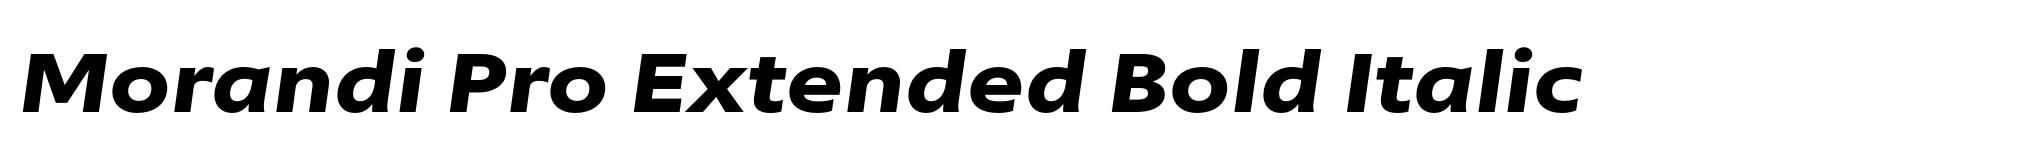 Morandi Pro Extended Bold Italic image